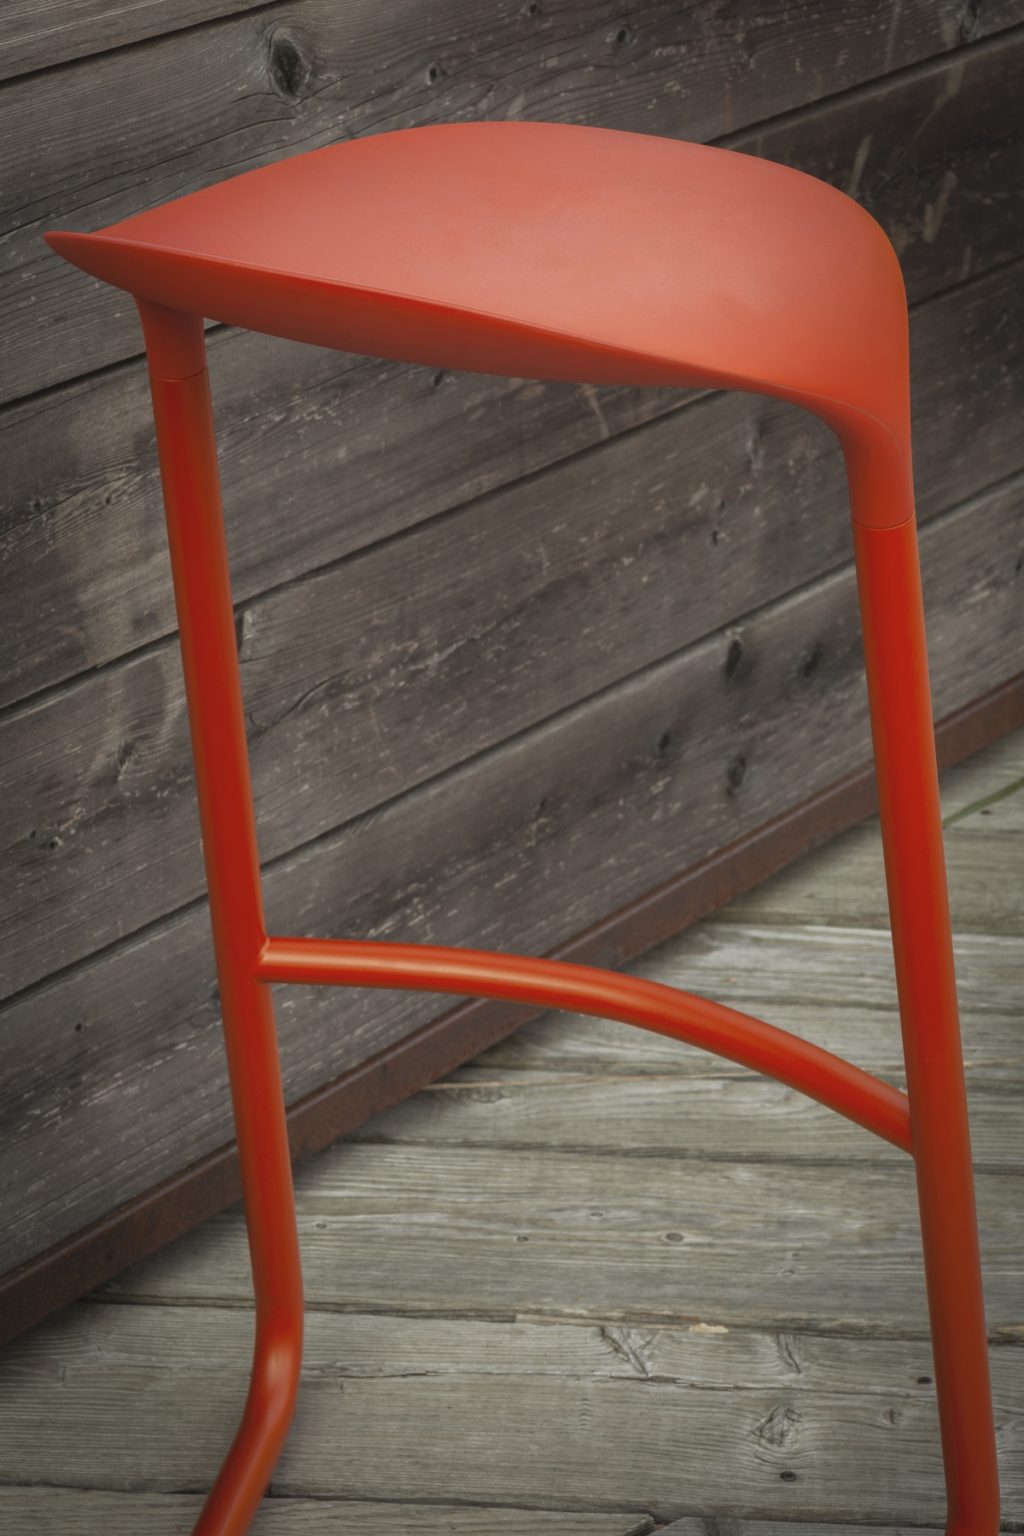 CROSS stool By Mario Ferrarini for Lapalma